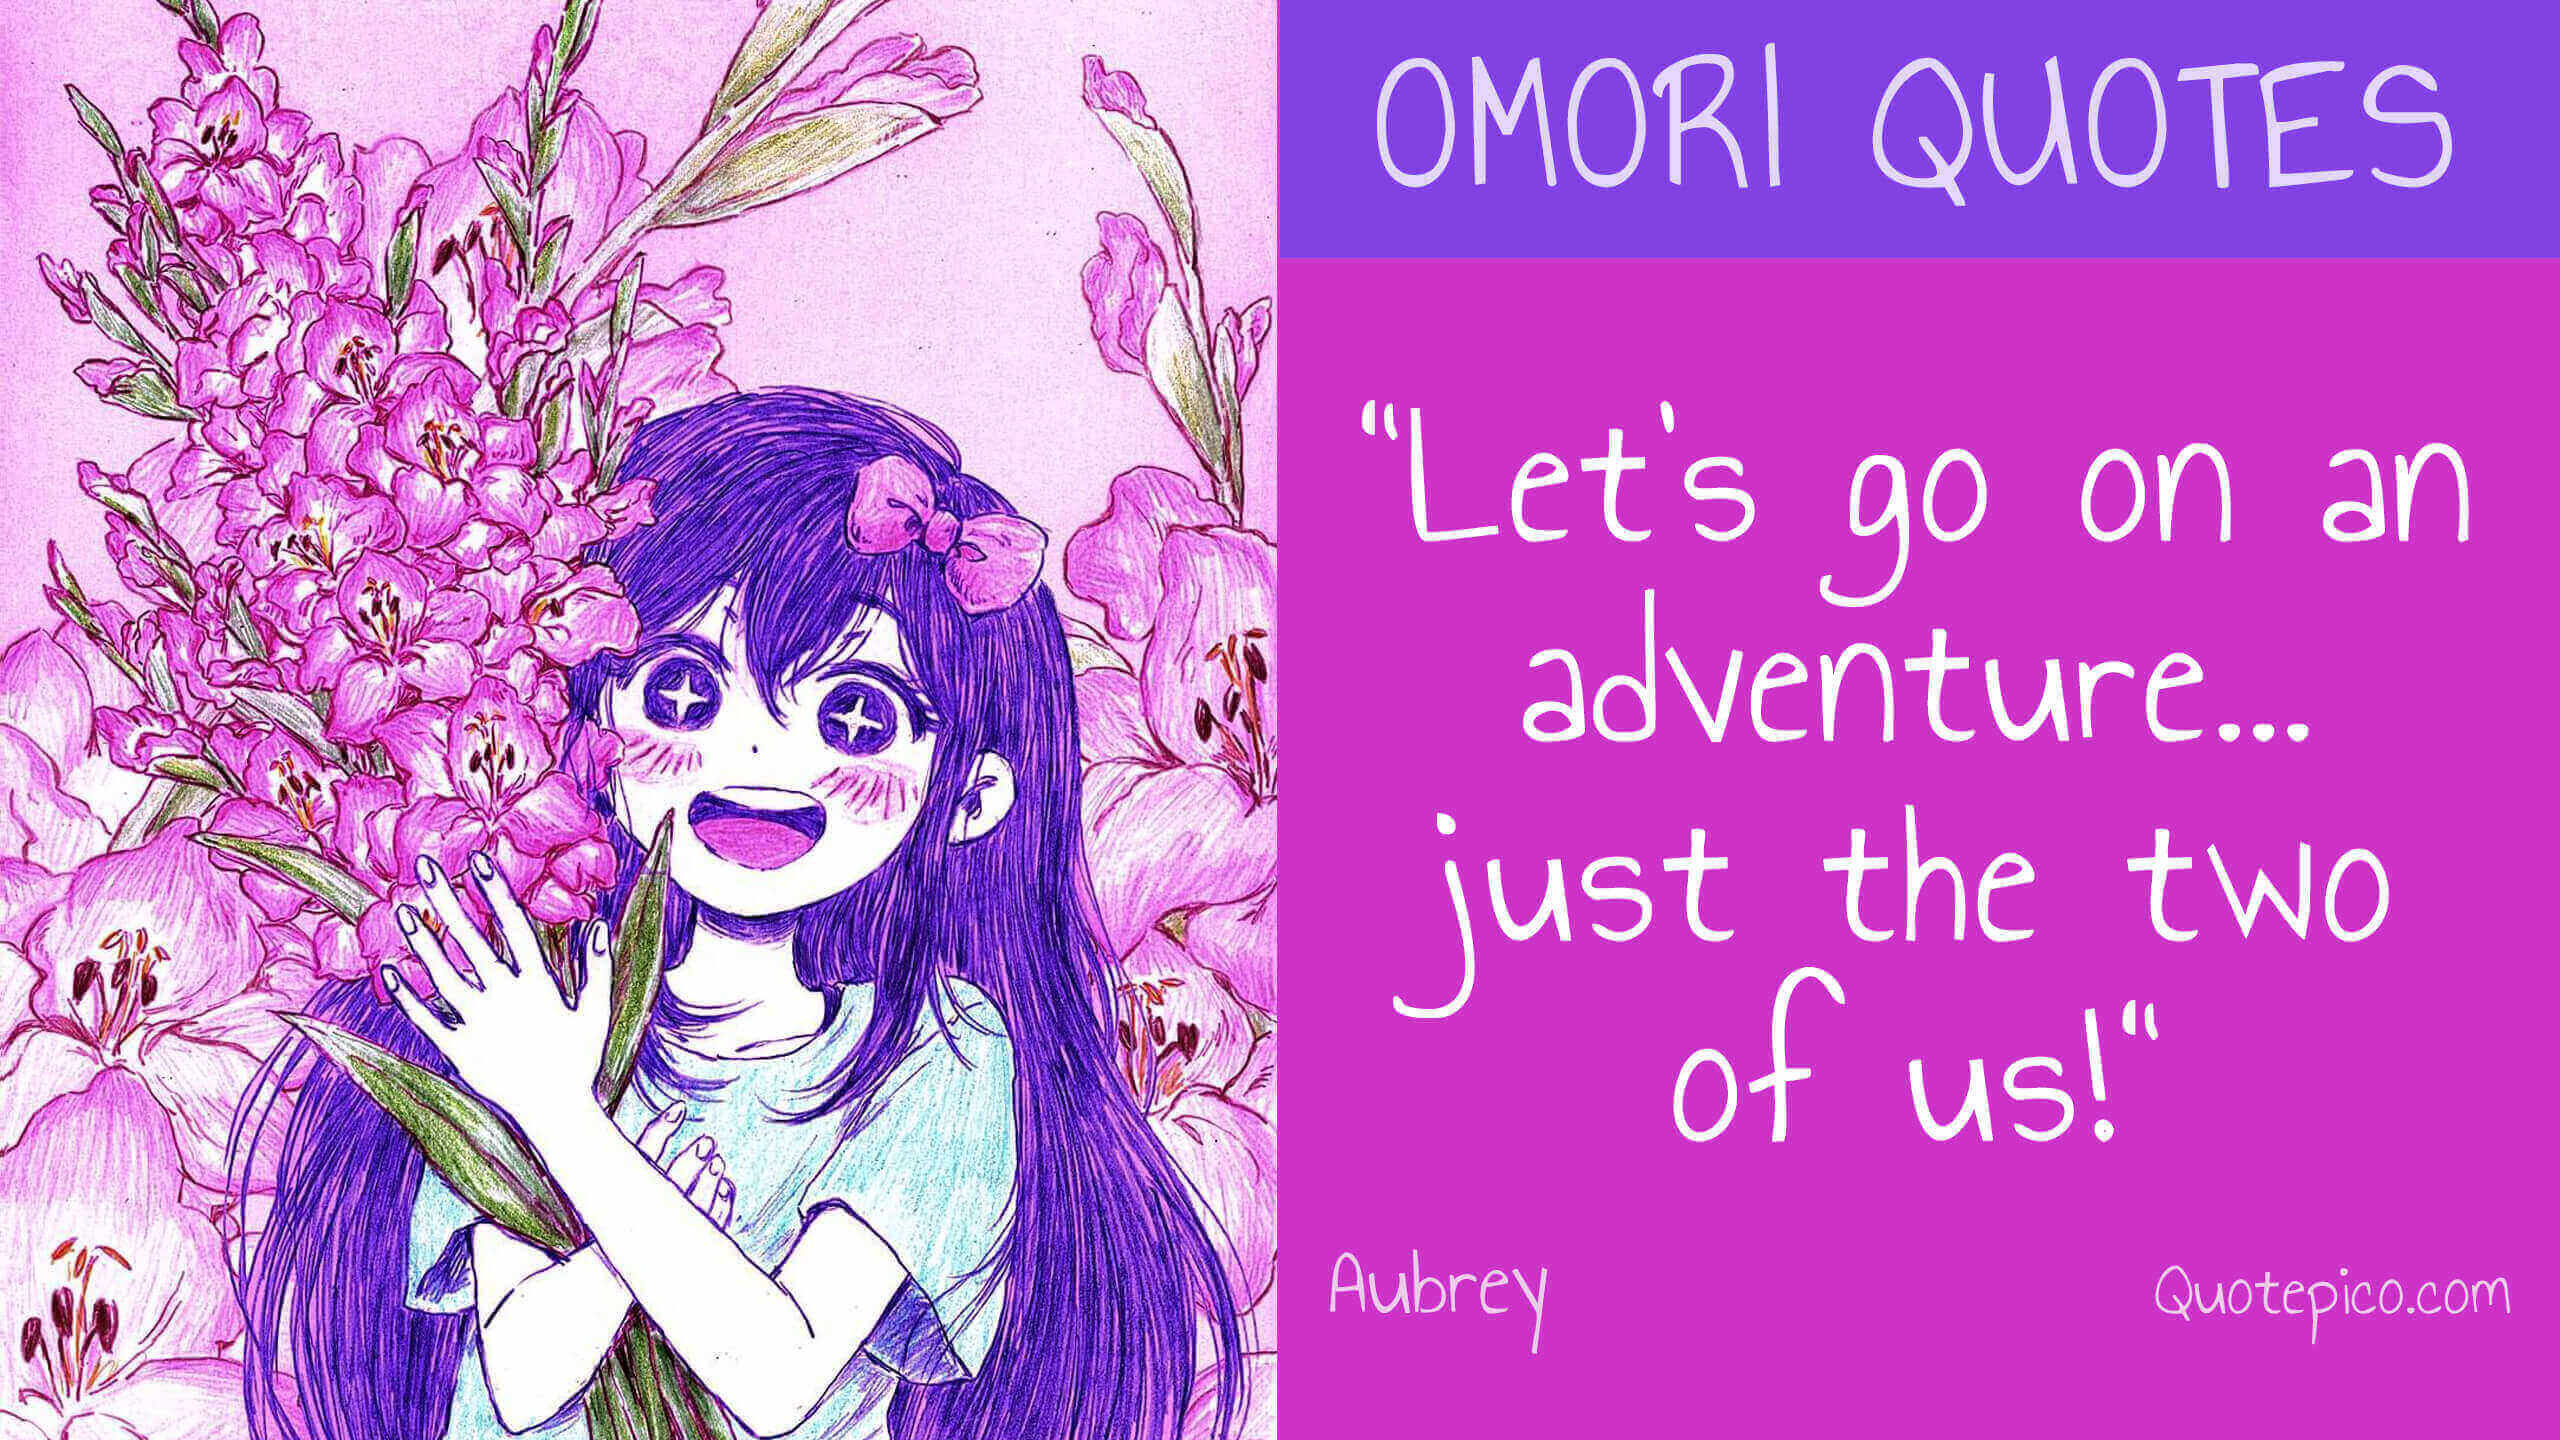 25 Omori Quotes by Basil, Mari, Aubrey etc